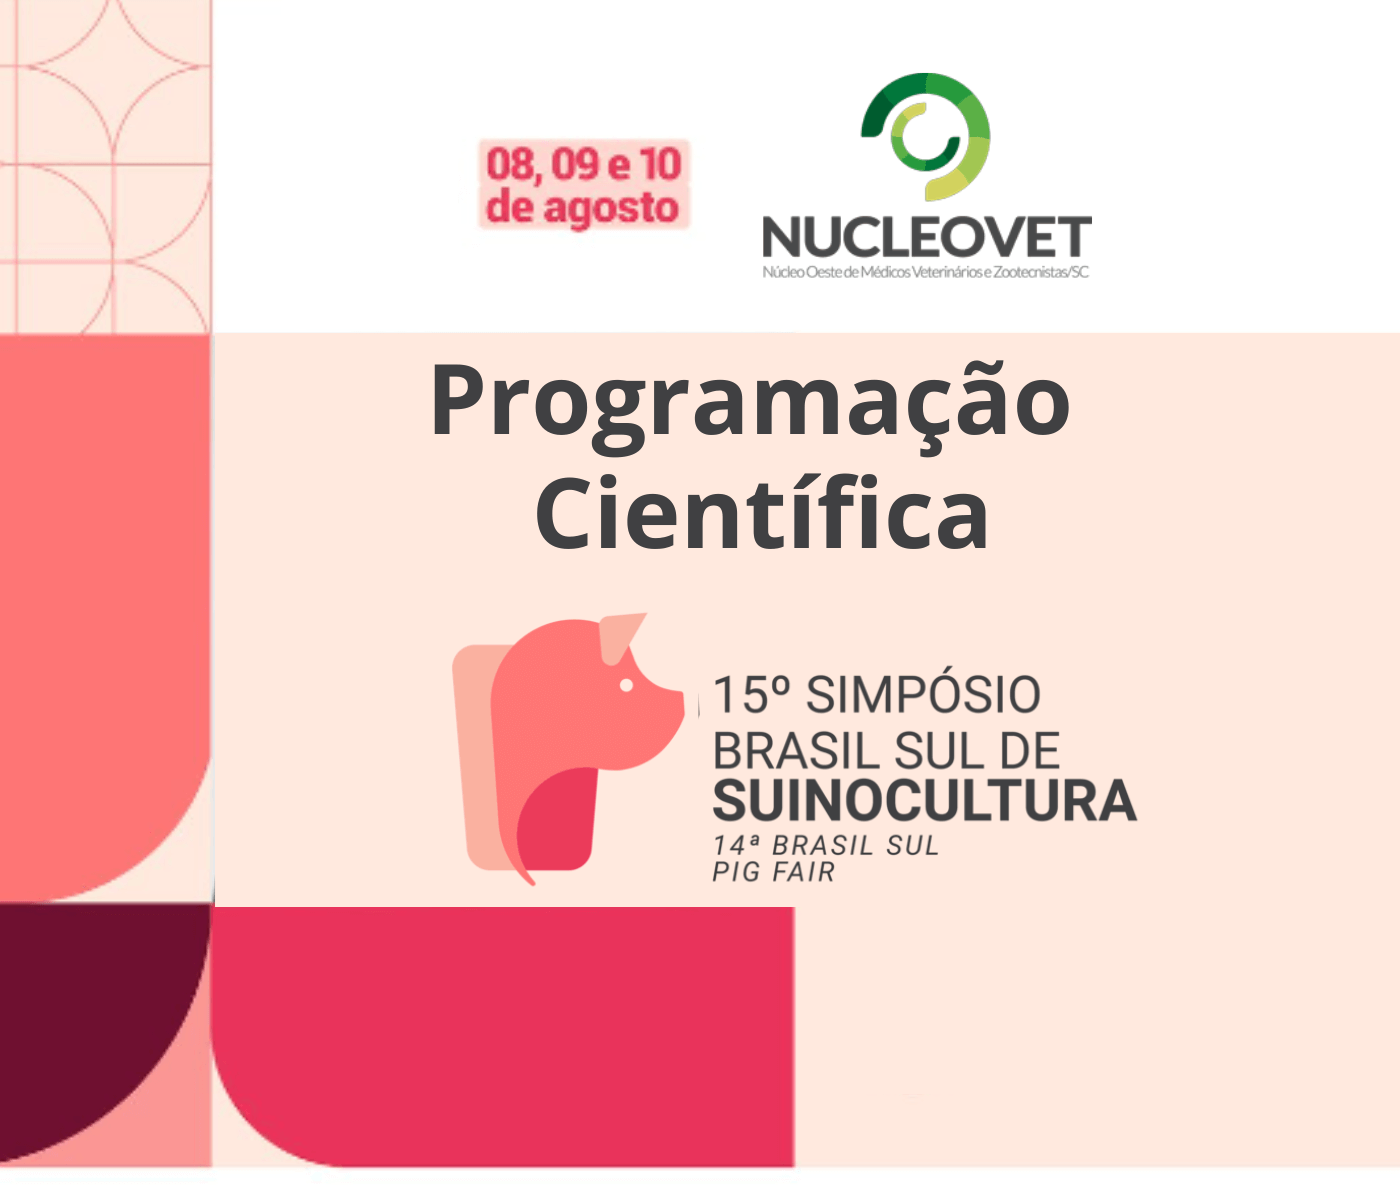 Nucleovet divulga programação científica do 15º Simpósio Brasil Sul de Suinocultura